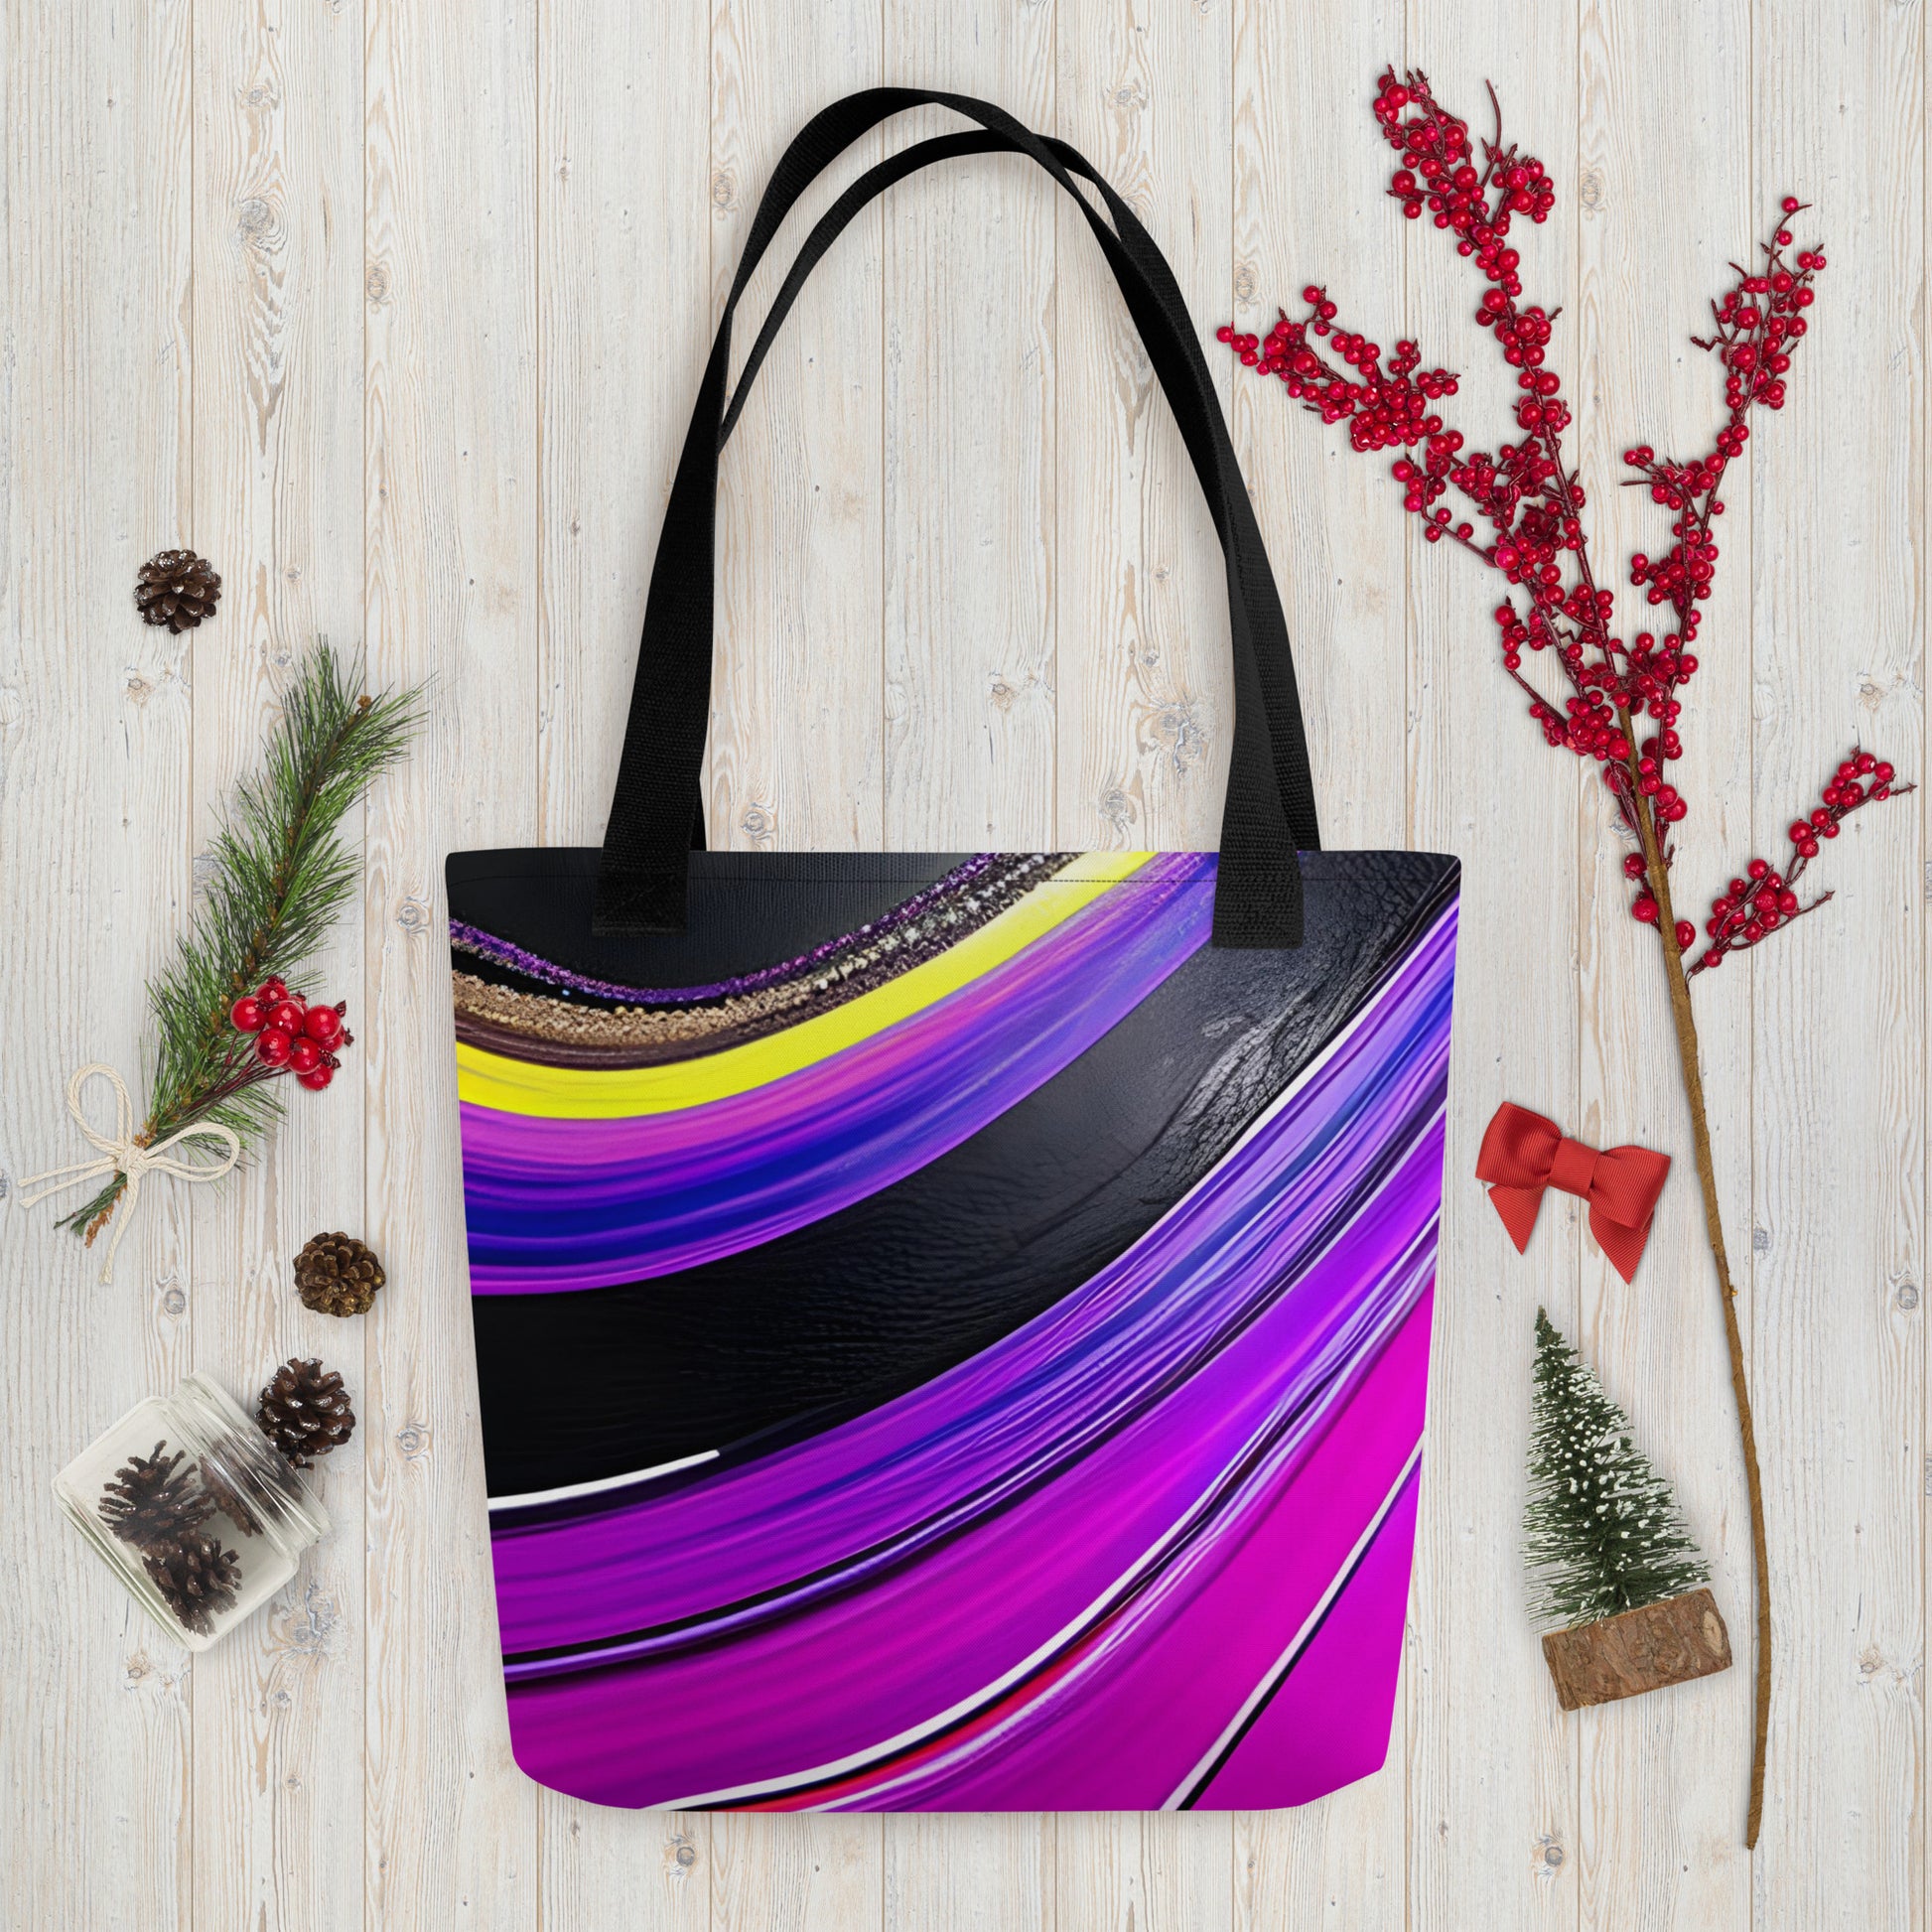 Tote bag - Purple Paint Pour Tote Bag Stylin' Spirit Default Title  